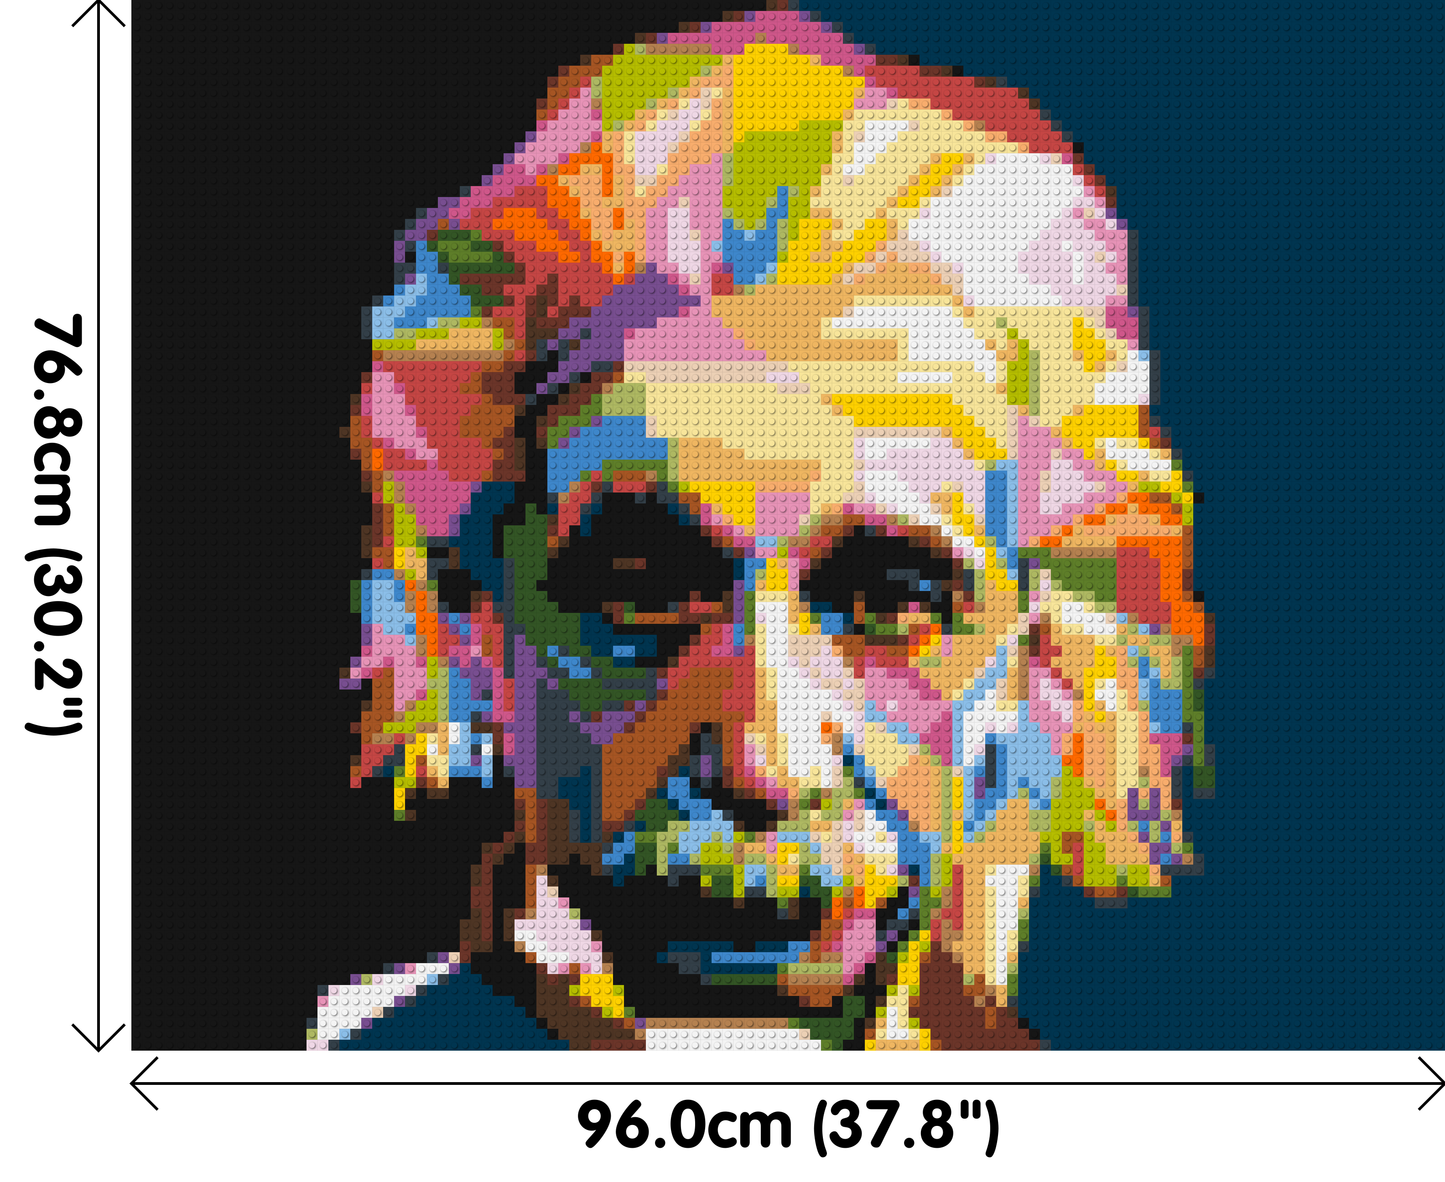 Albert Einstein - Brick Art Mosaic Kit